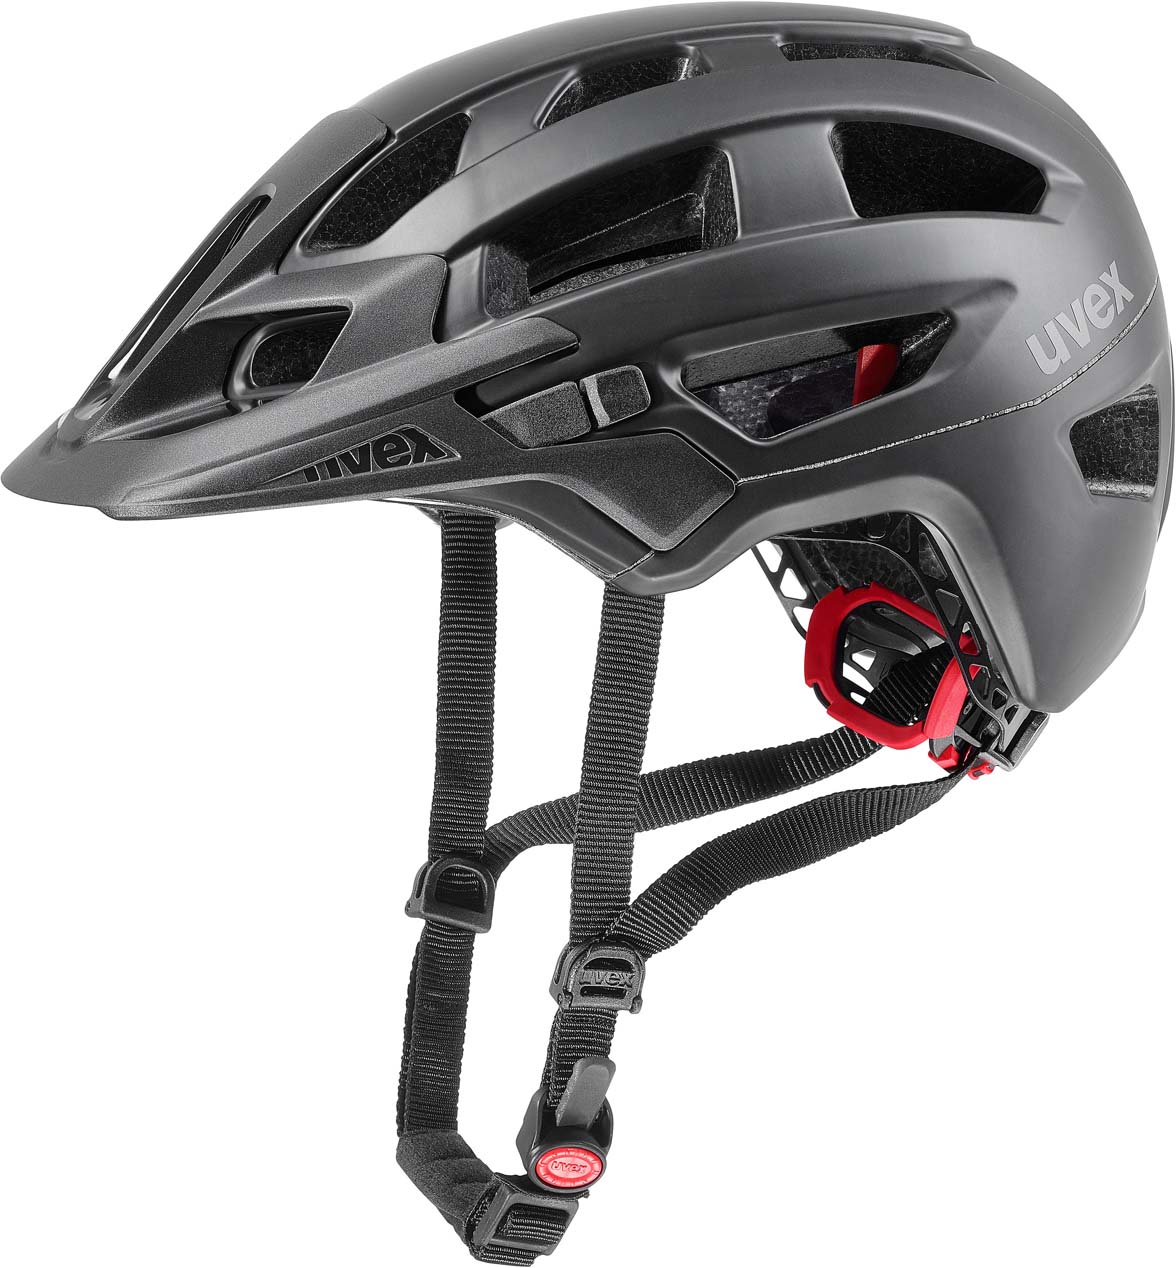 Uvex finale 2.0 - bicycle helmet